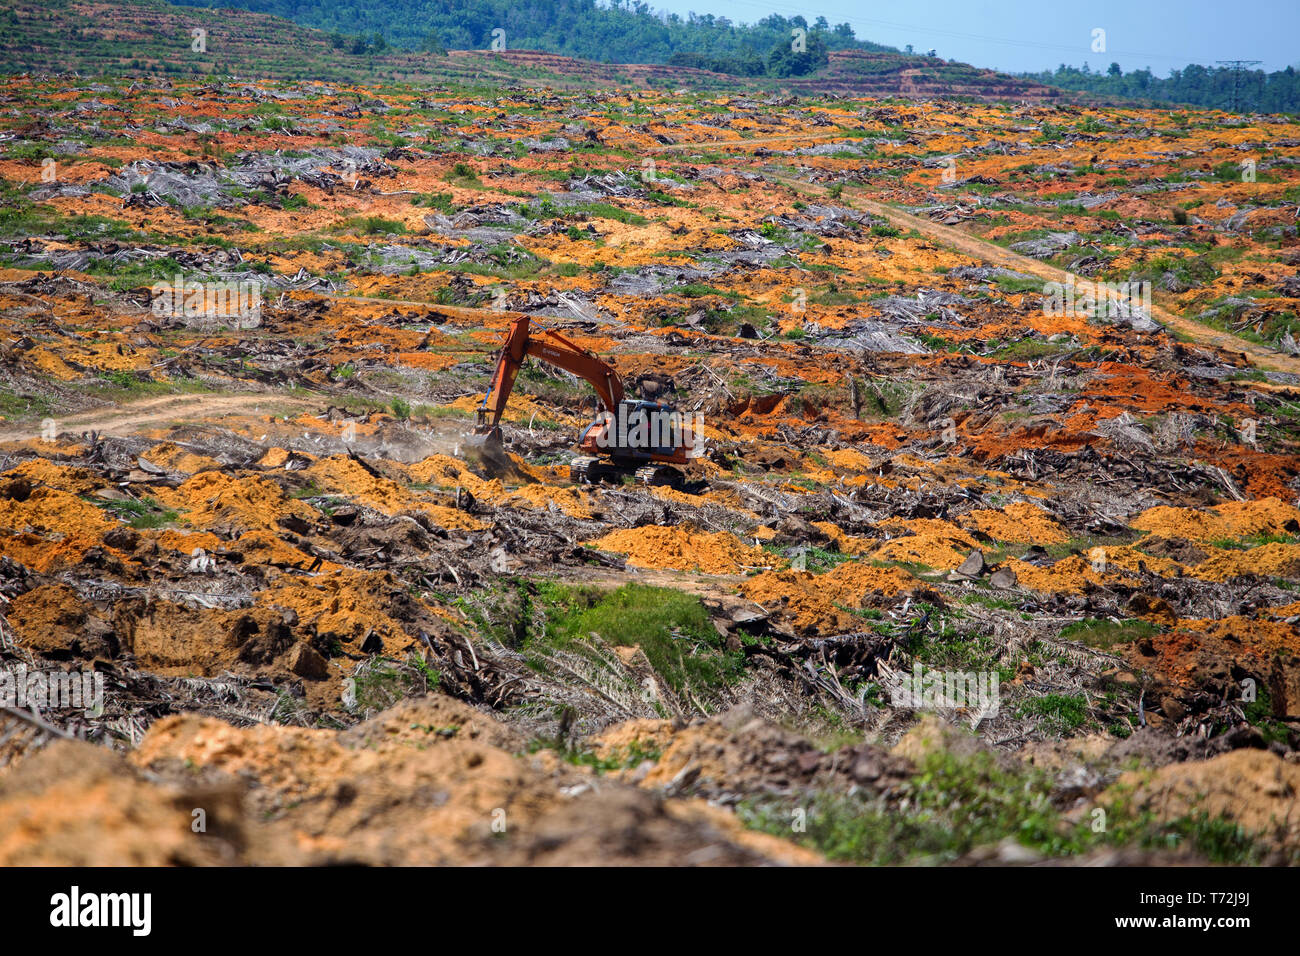 Una excavadora Hitachi eathmoving trabajando en el terreno adecuado para una plantación de palma de aceite entre Kota Marudu y Kudat en Sabah Borneo malasio Foto de stock